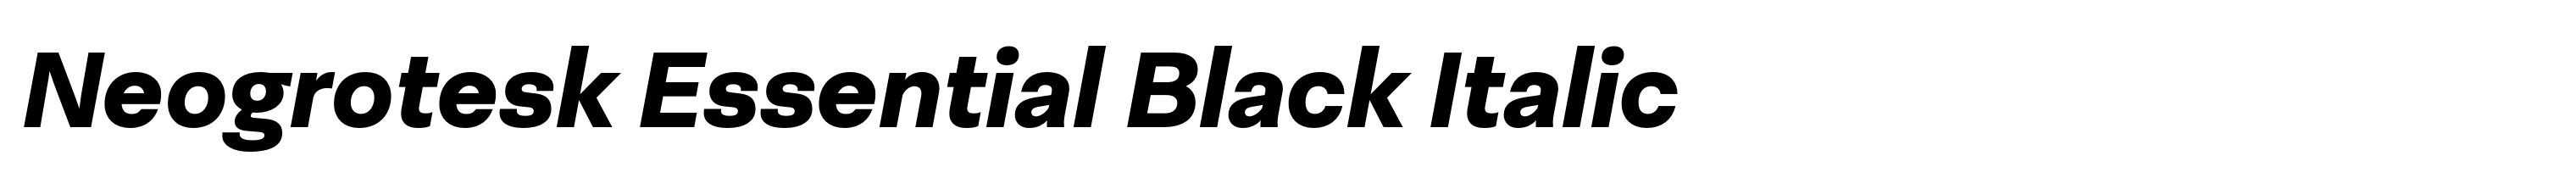 Neogrotesk Essential Black Italic